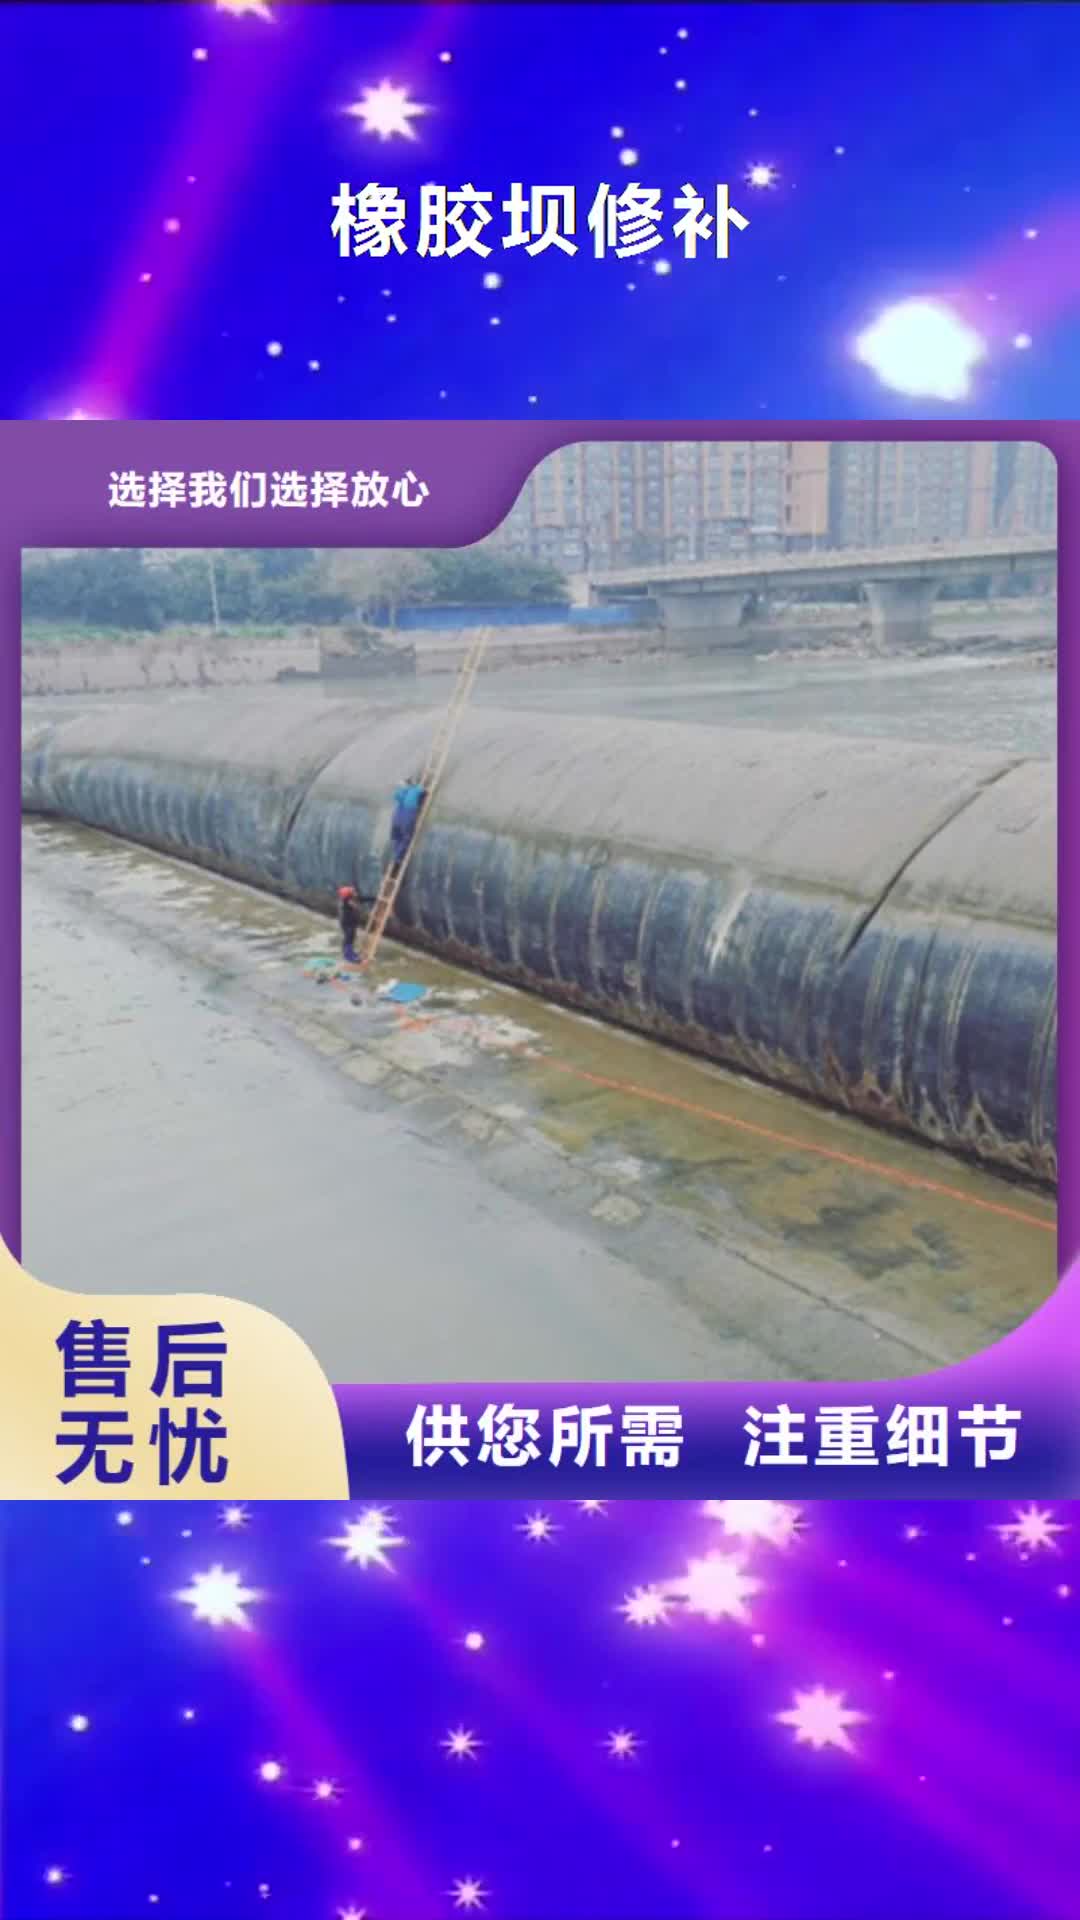 上海 橡胶坝修补,【道堵水气囊】多年行业积累